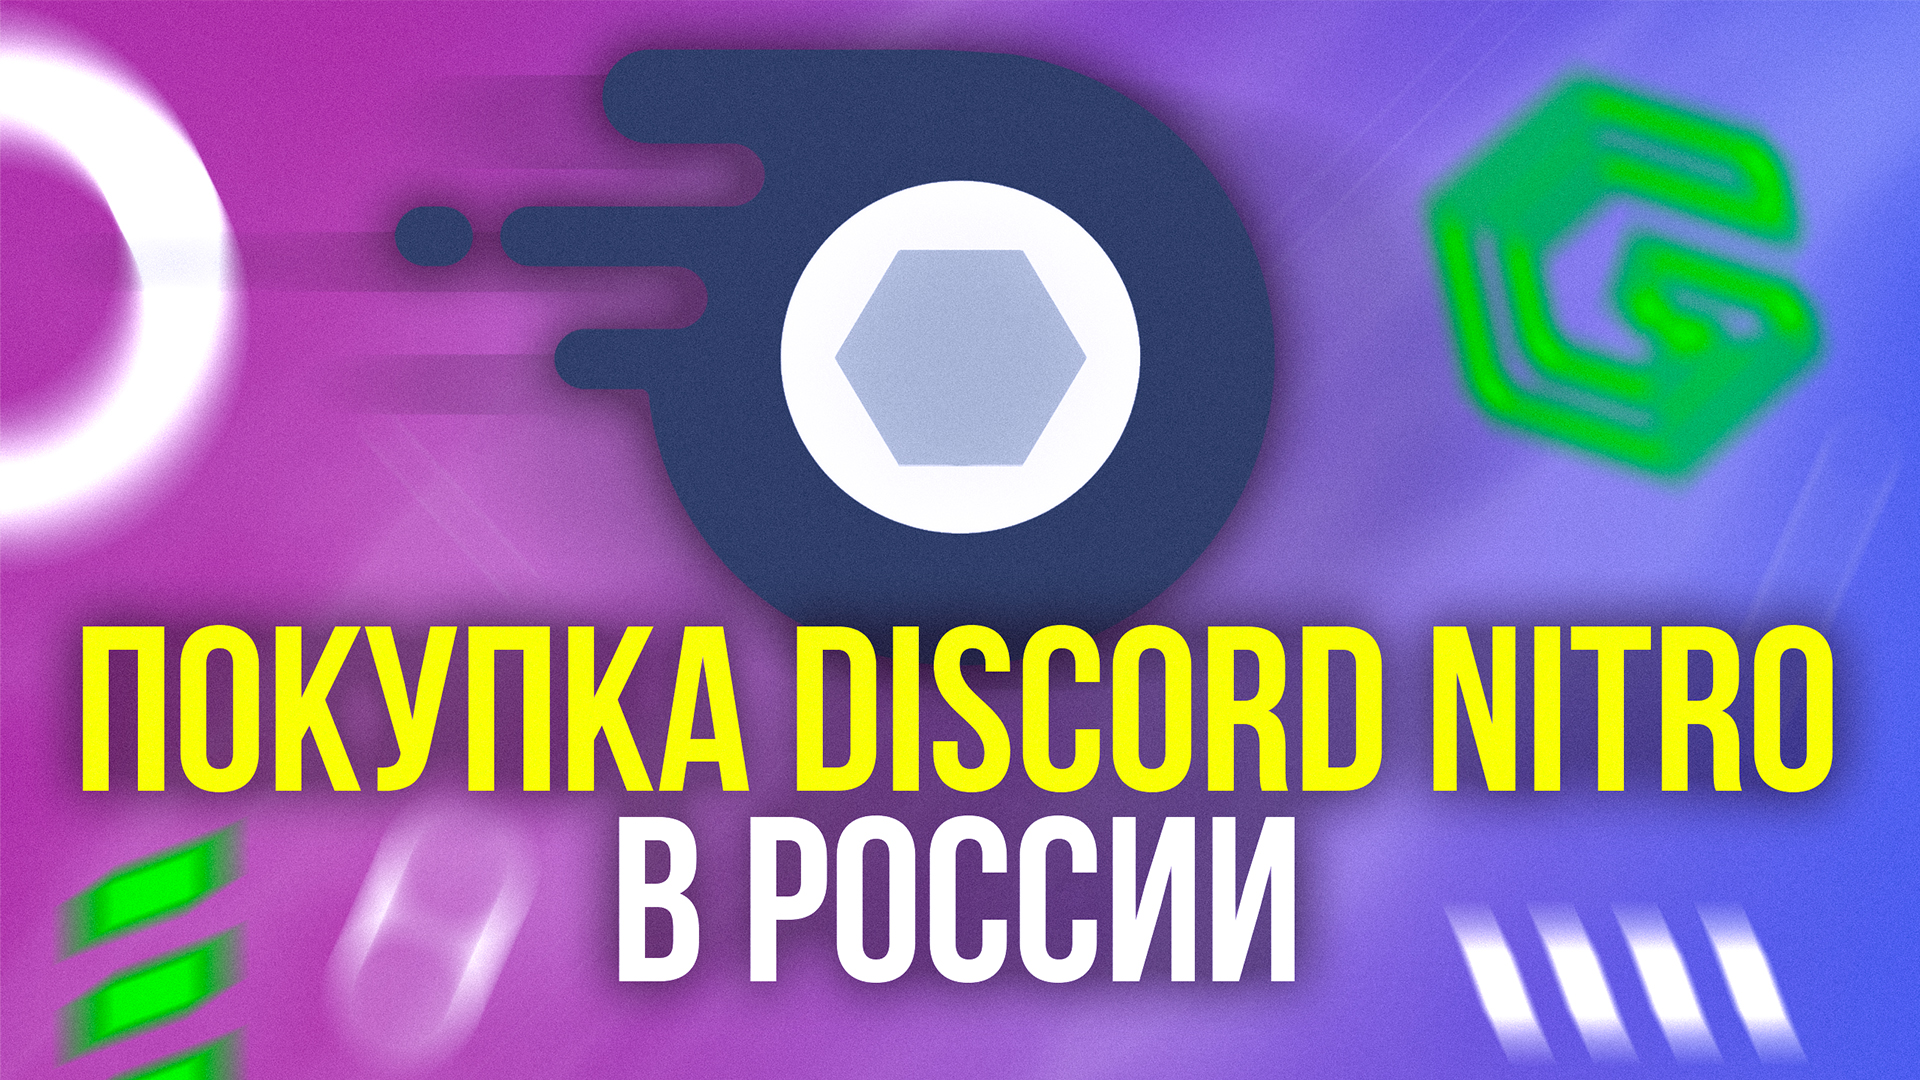 Как купить Discord Nitro в России